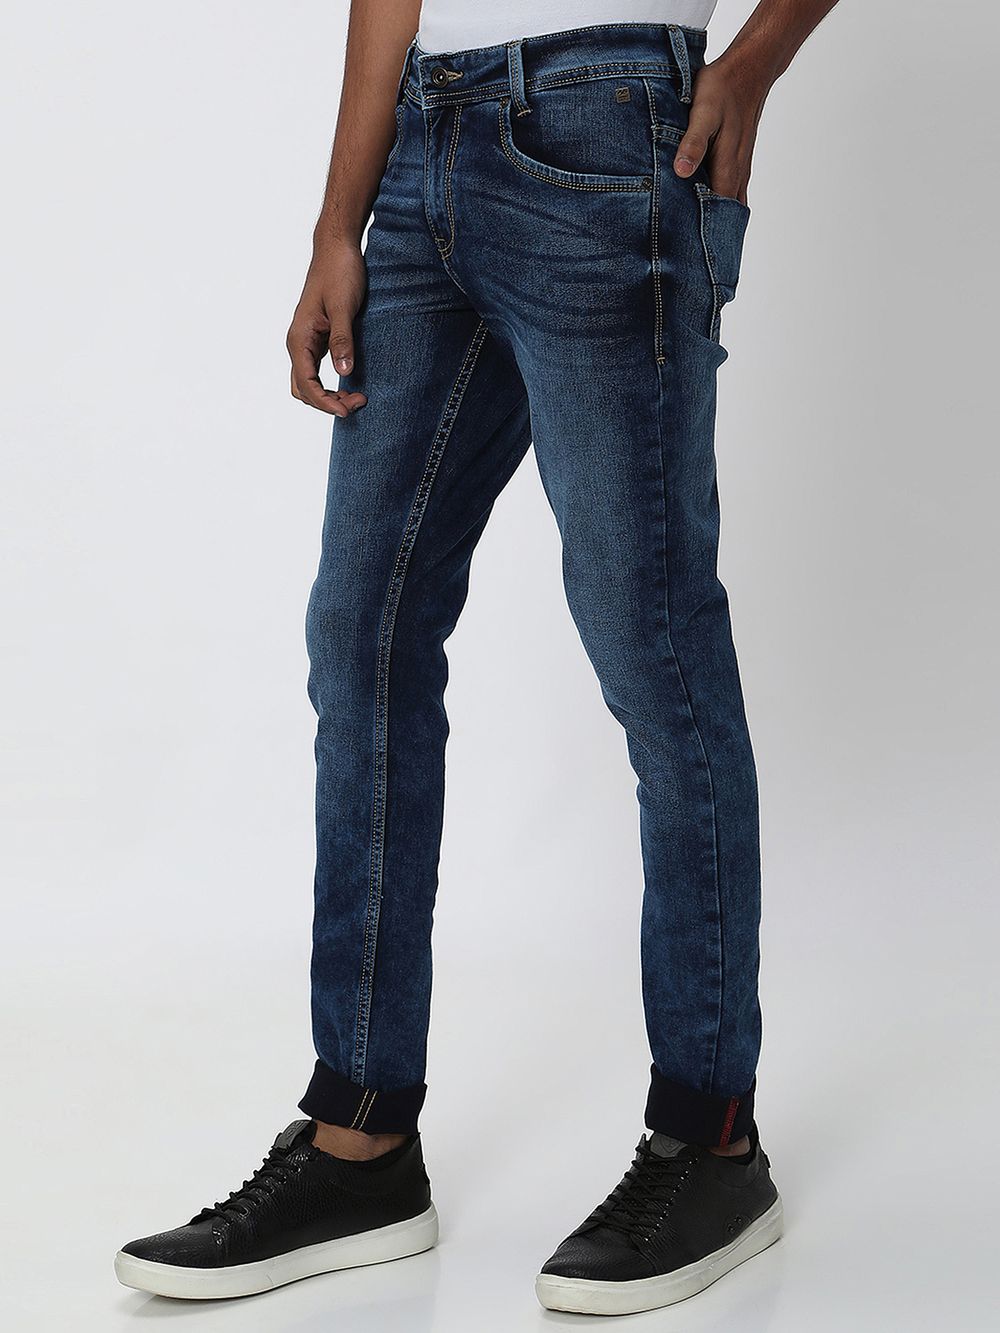 Indigo Blue Skinny Fit Originals Stretch Jeans